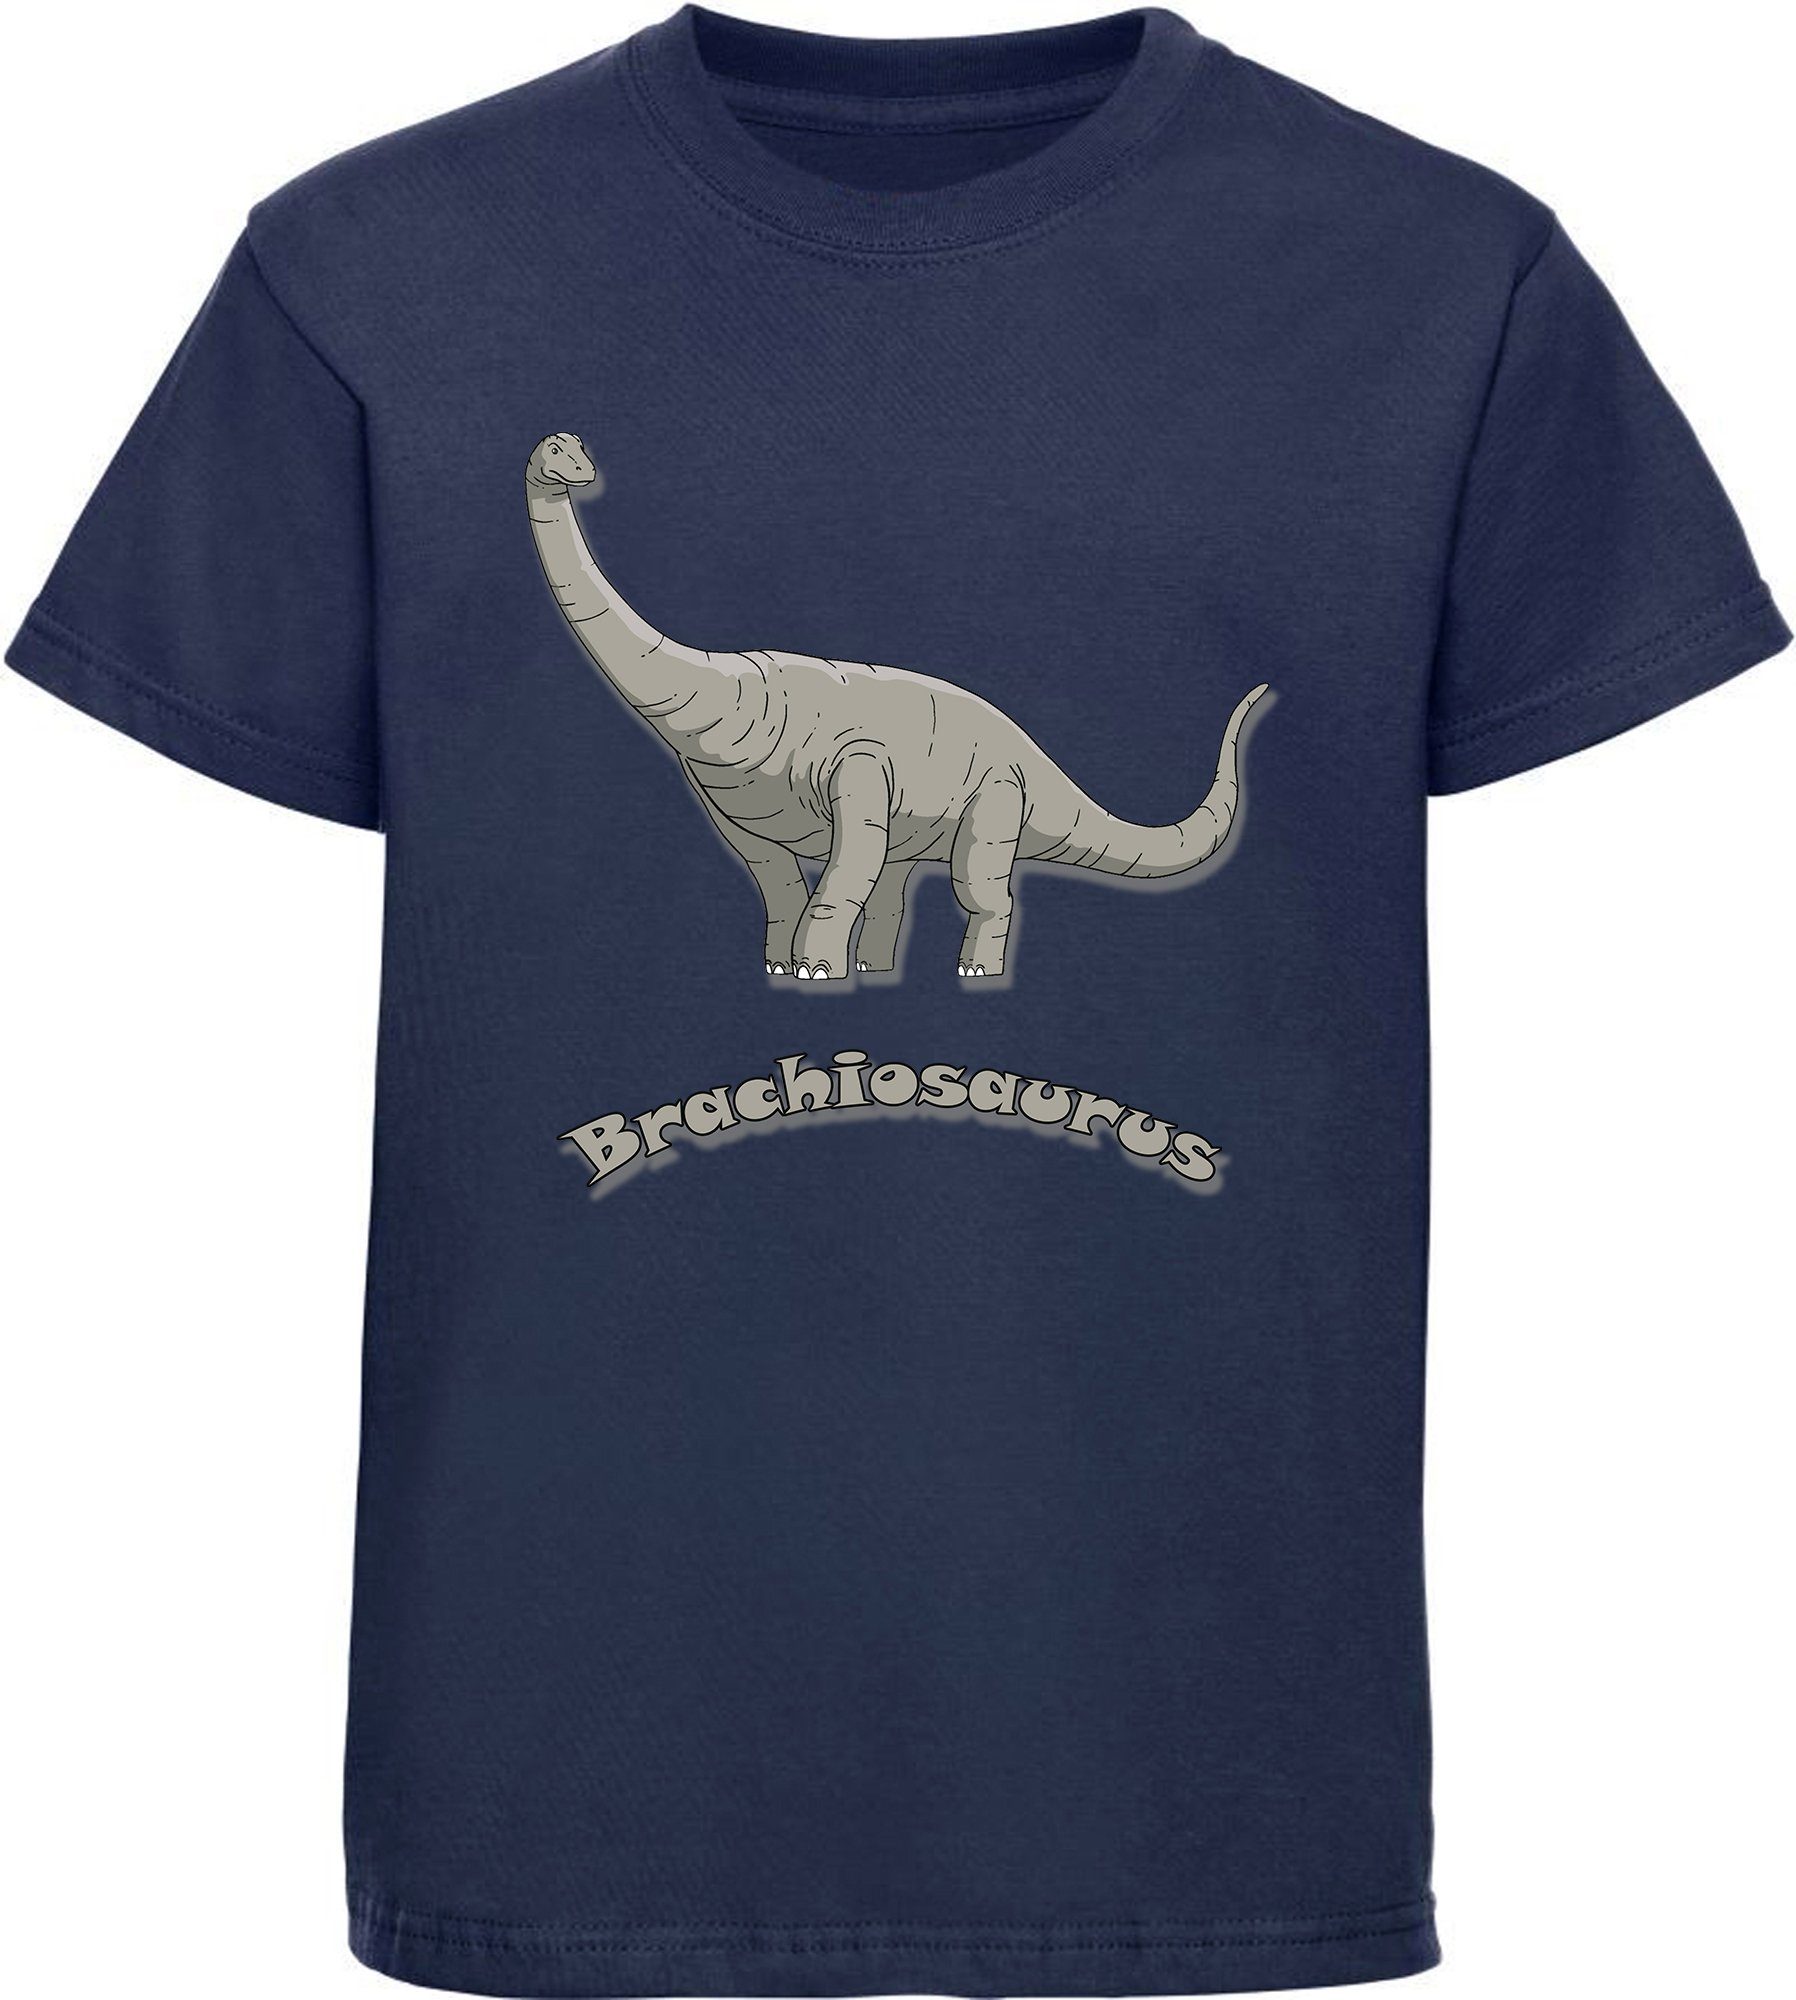 MyDesign24 Print-Shirt rot, weiß, blau mit schwarz, bedrucktes Dino, T-Shirt Baumwollshirt i66 Brachiosaurus blau, navy Kinder mit